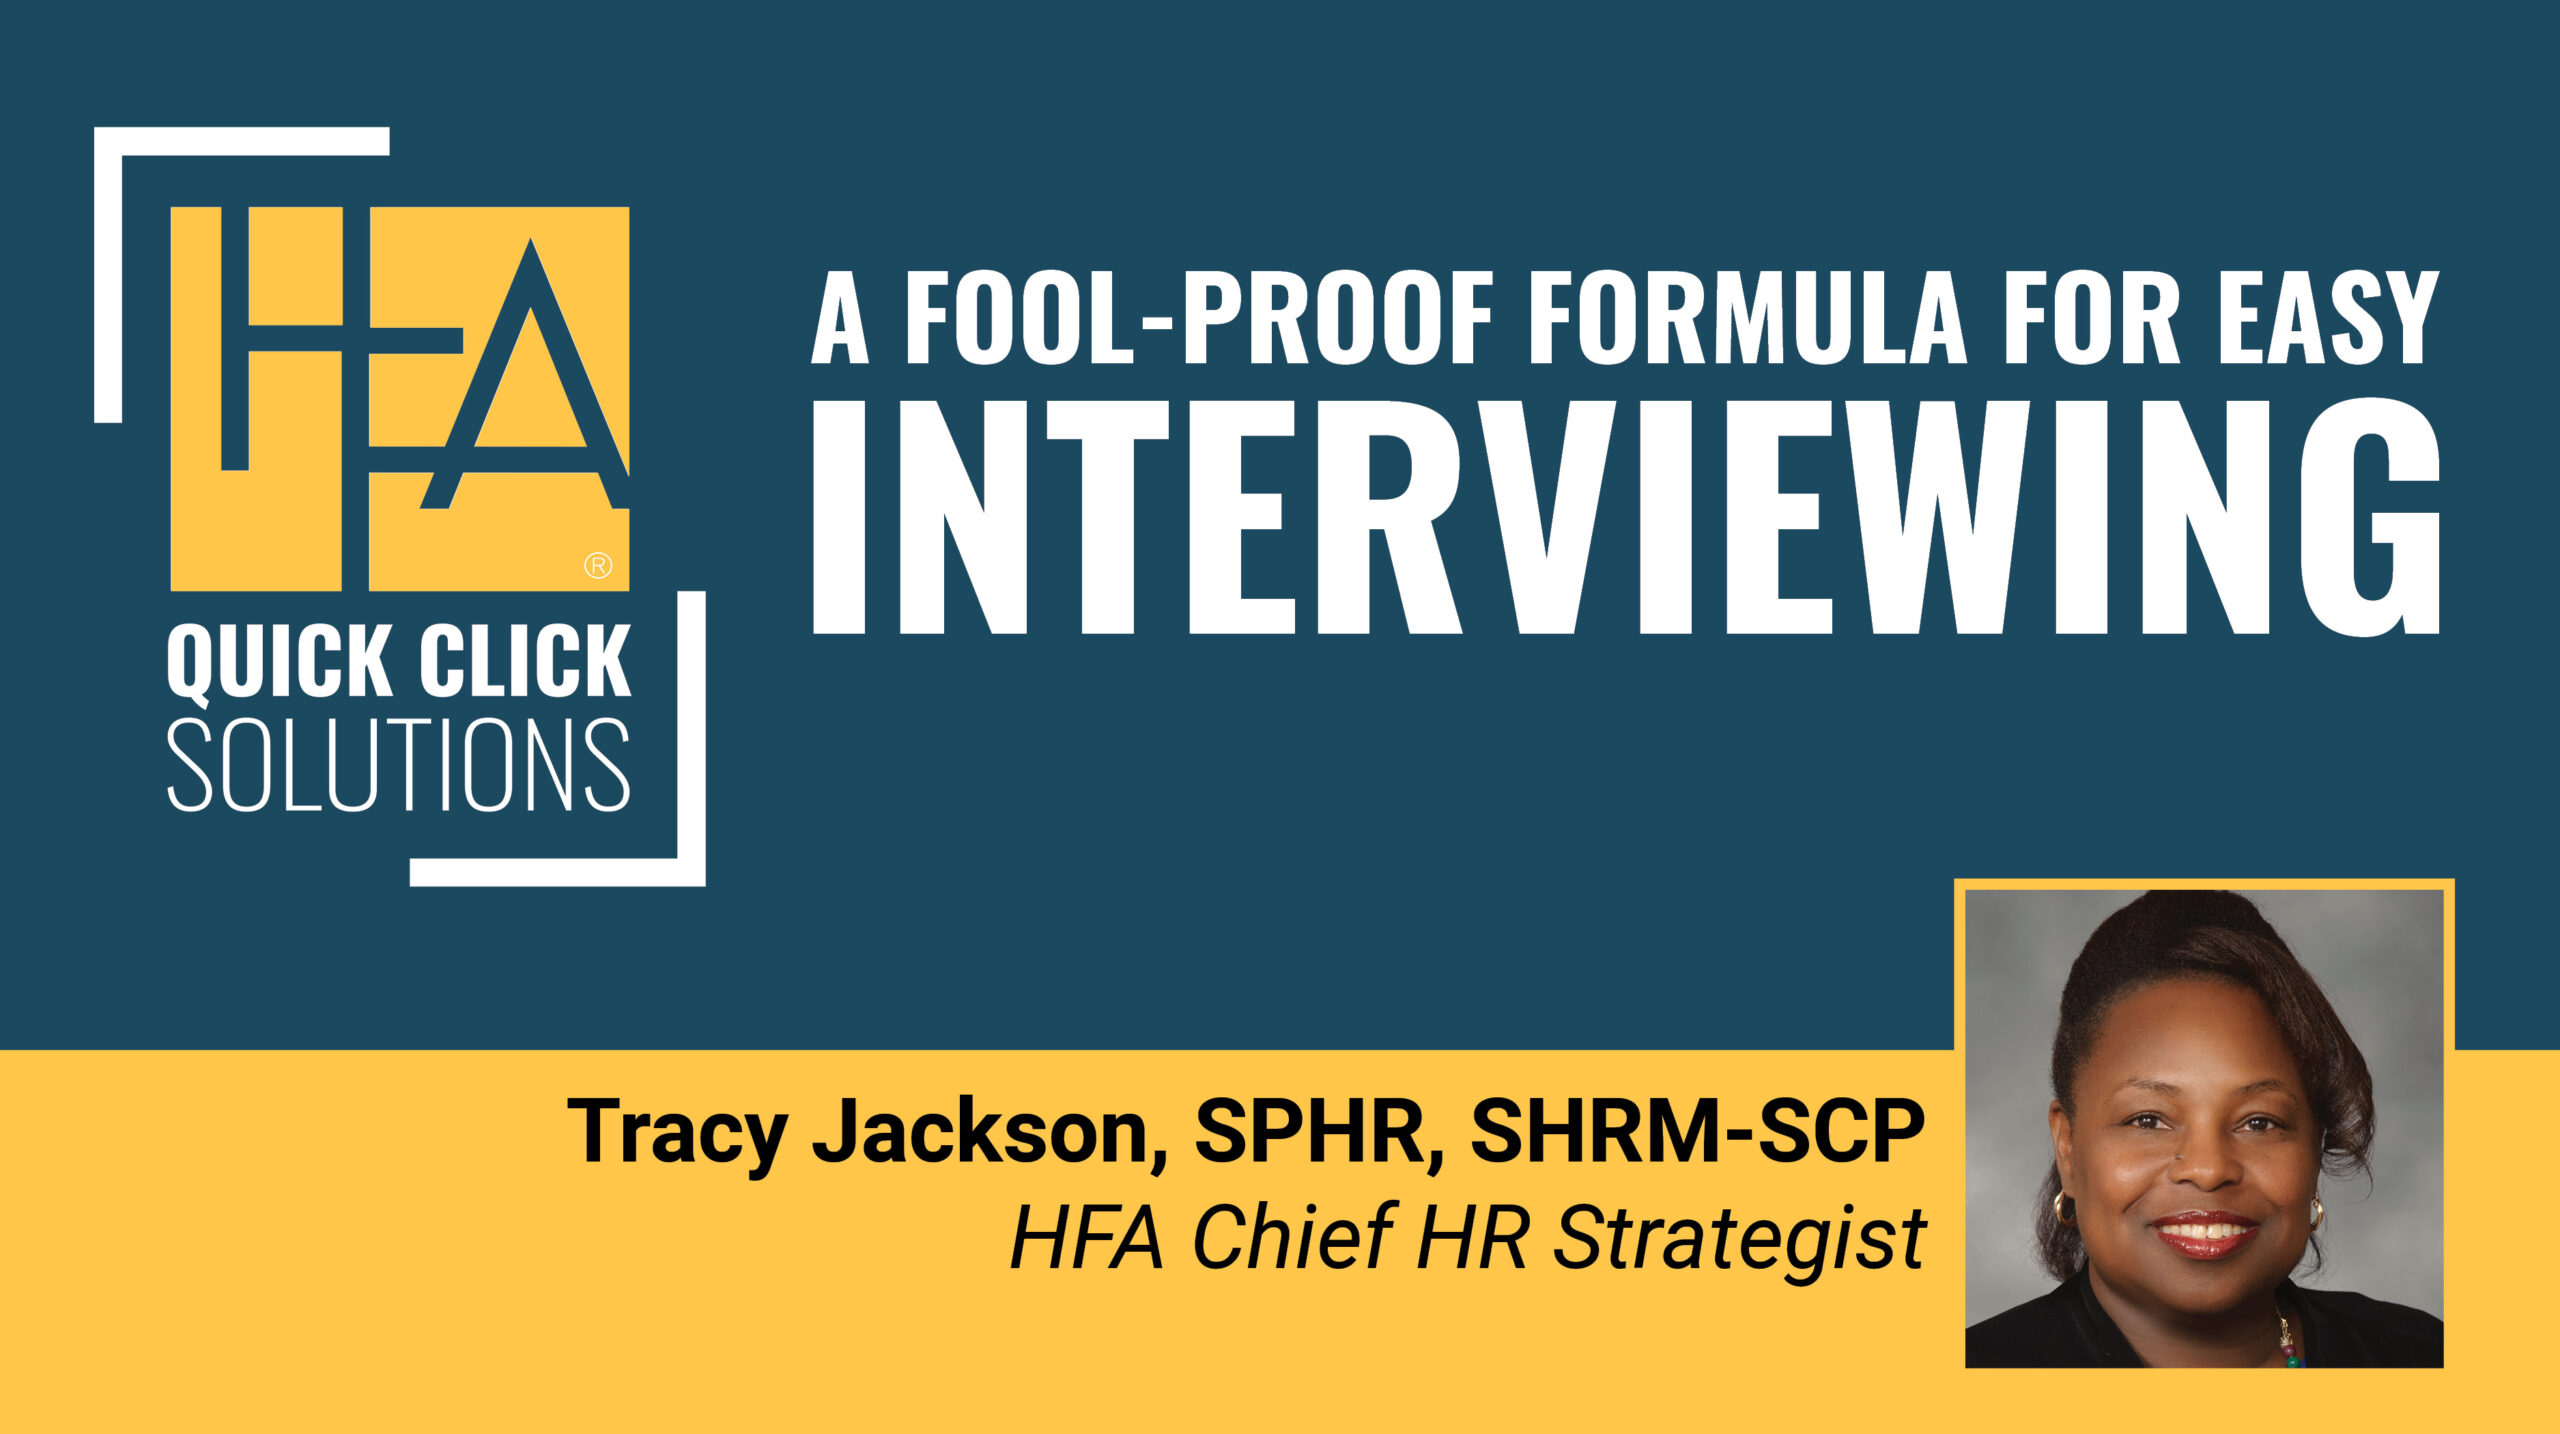 HFA-QCS Fool-Proof Interviewing